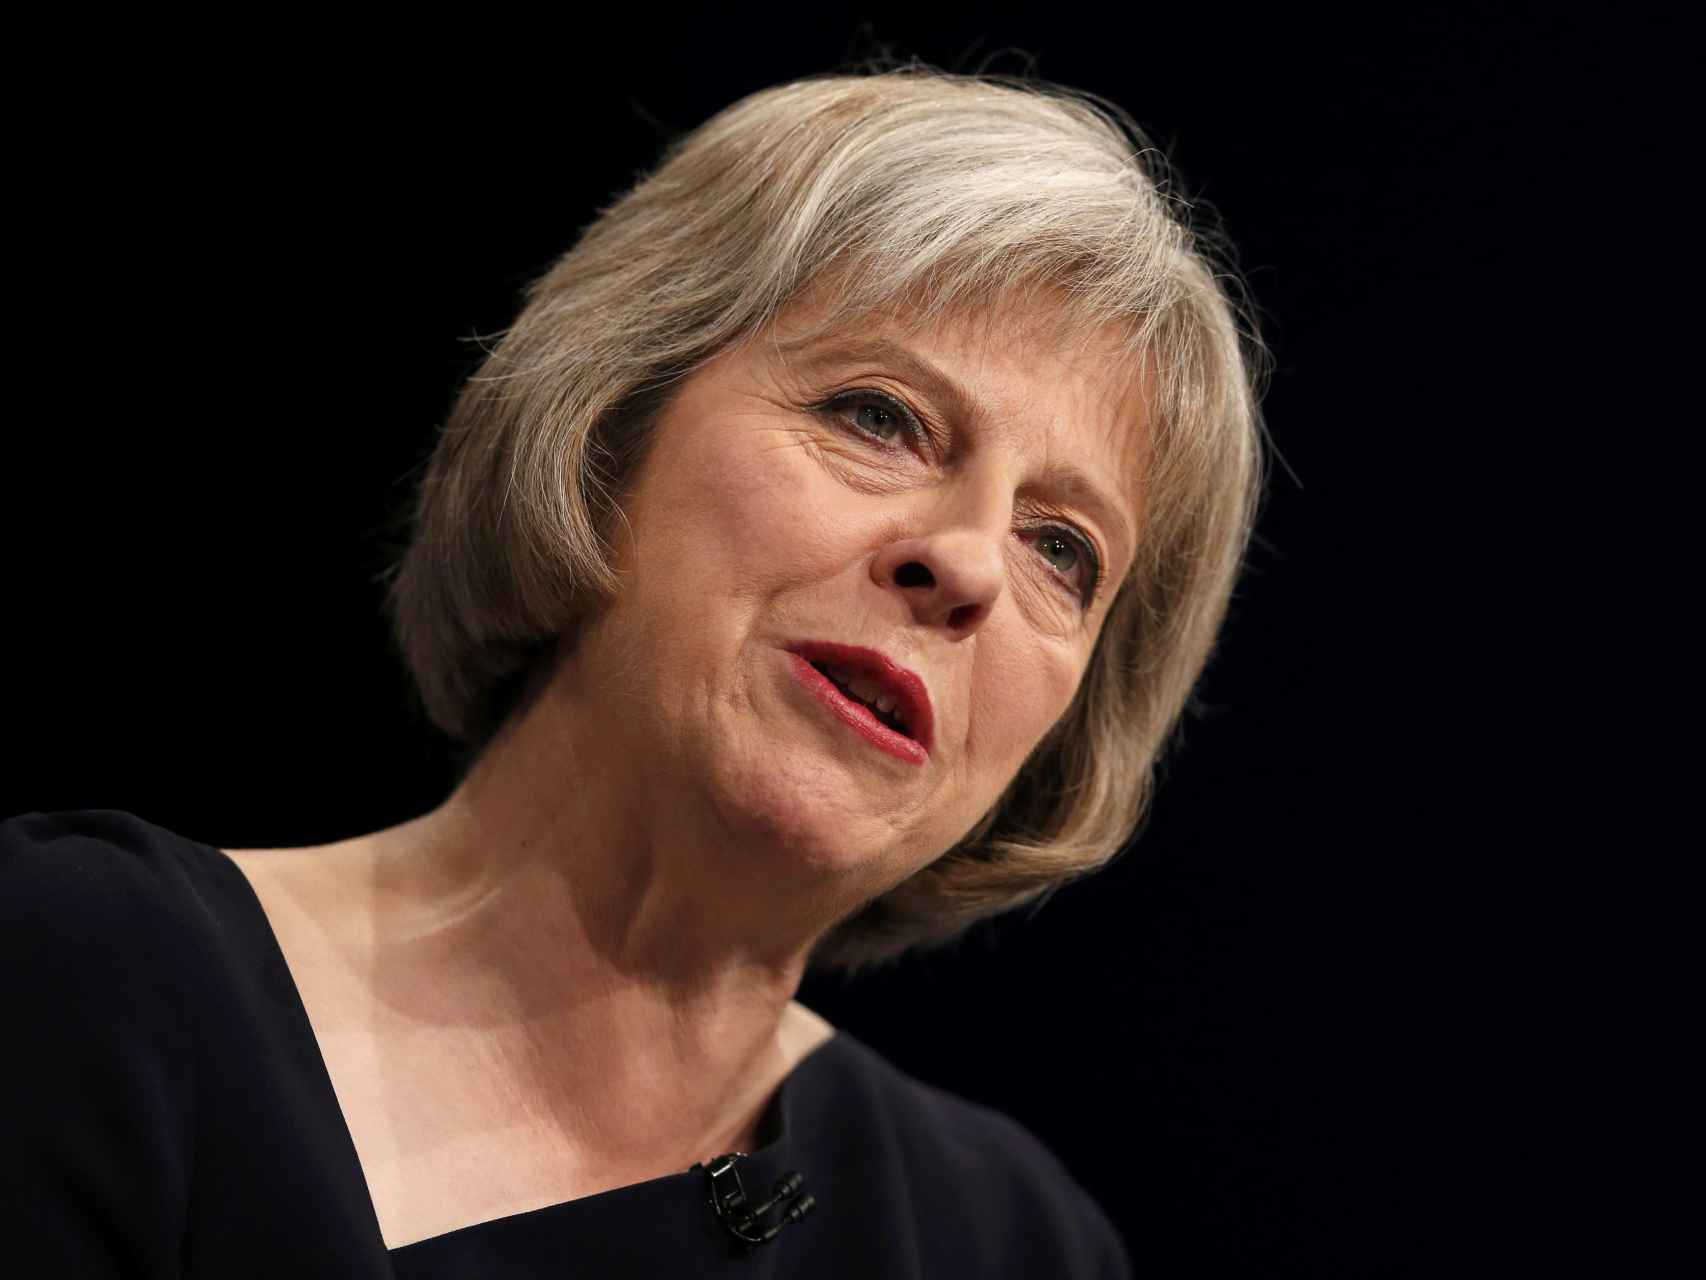 La ministra de Interior británica, Theresa May, tomará las riendas del país.